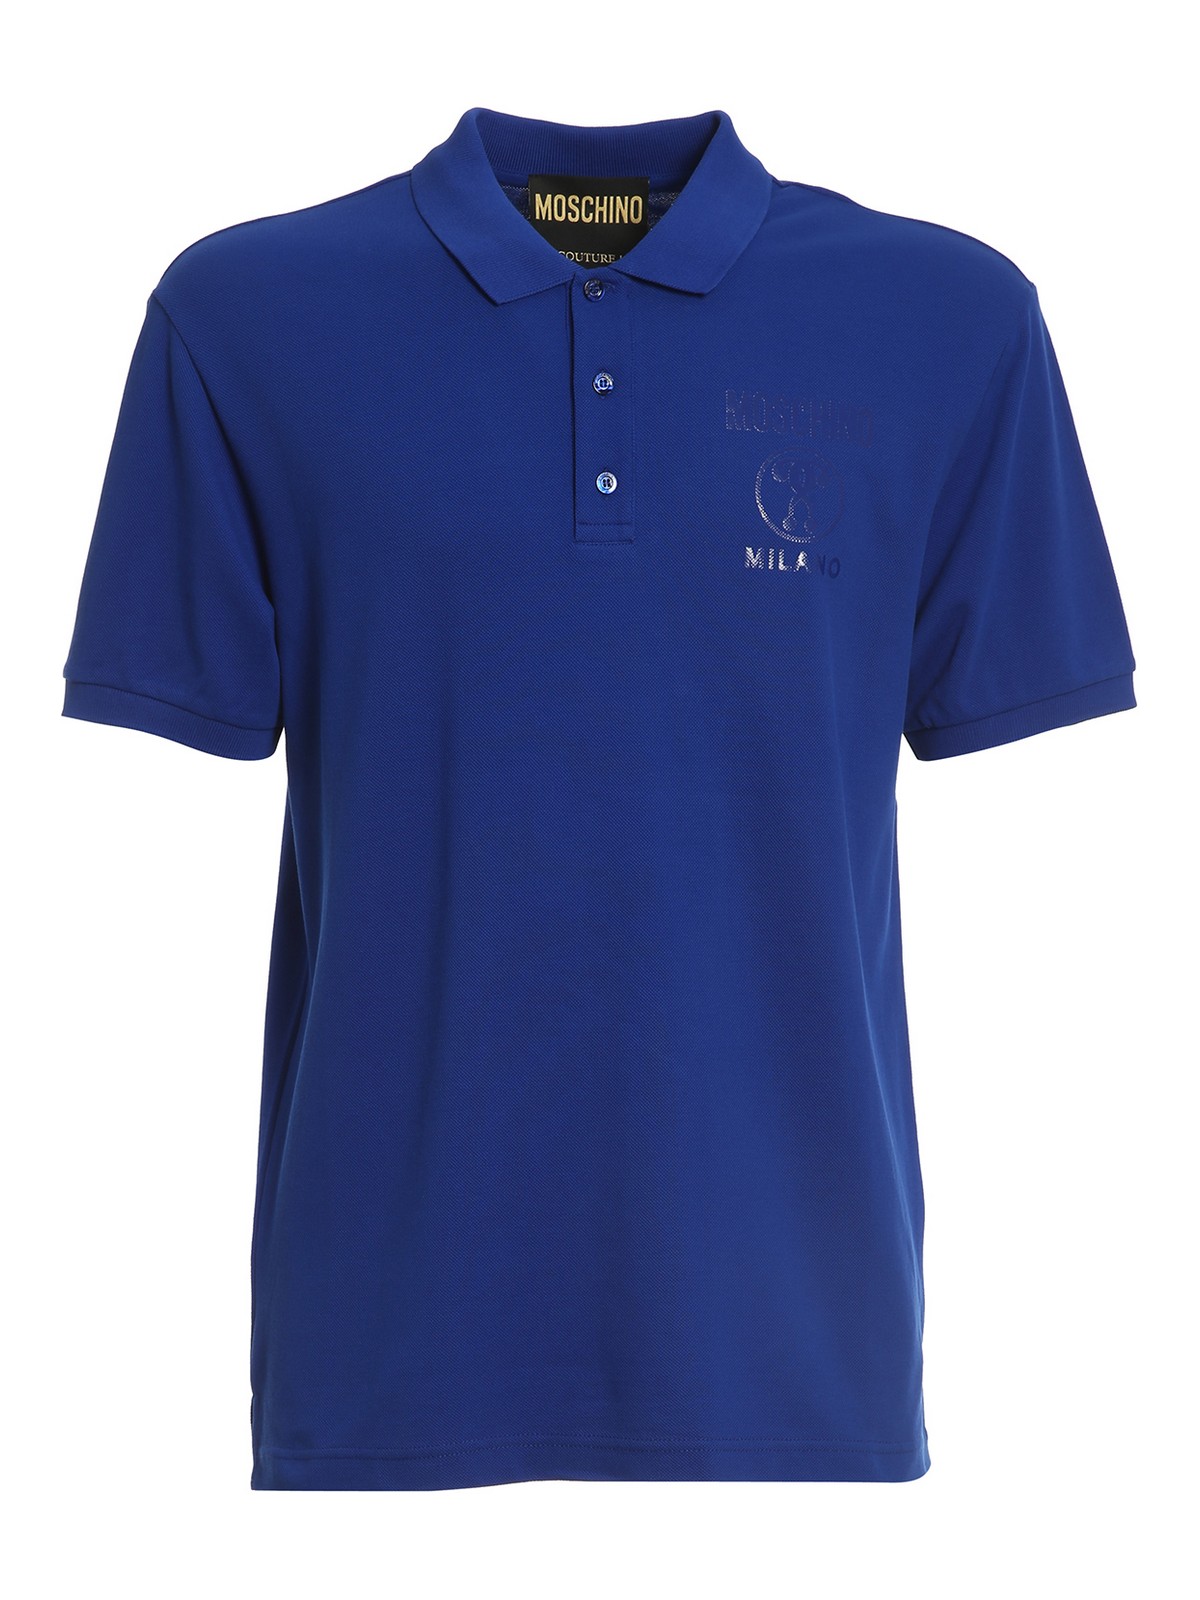 Moschino Plain Colour Polo Shirt In Blue